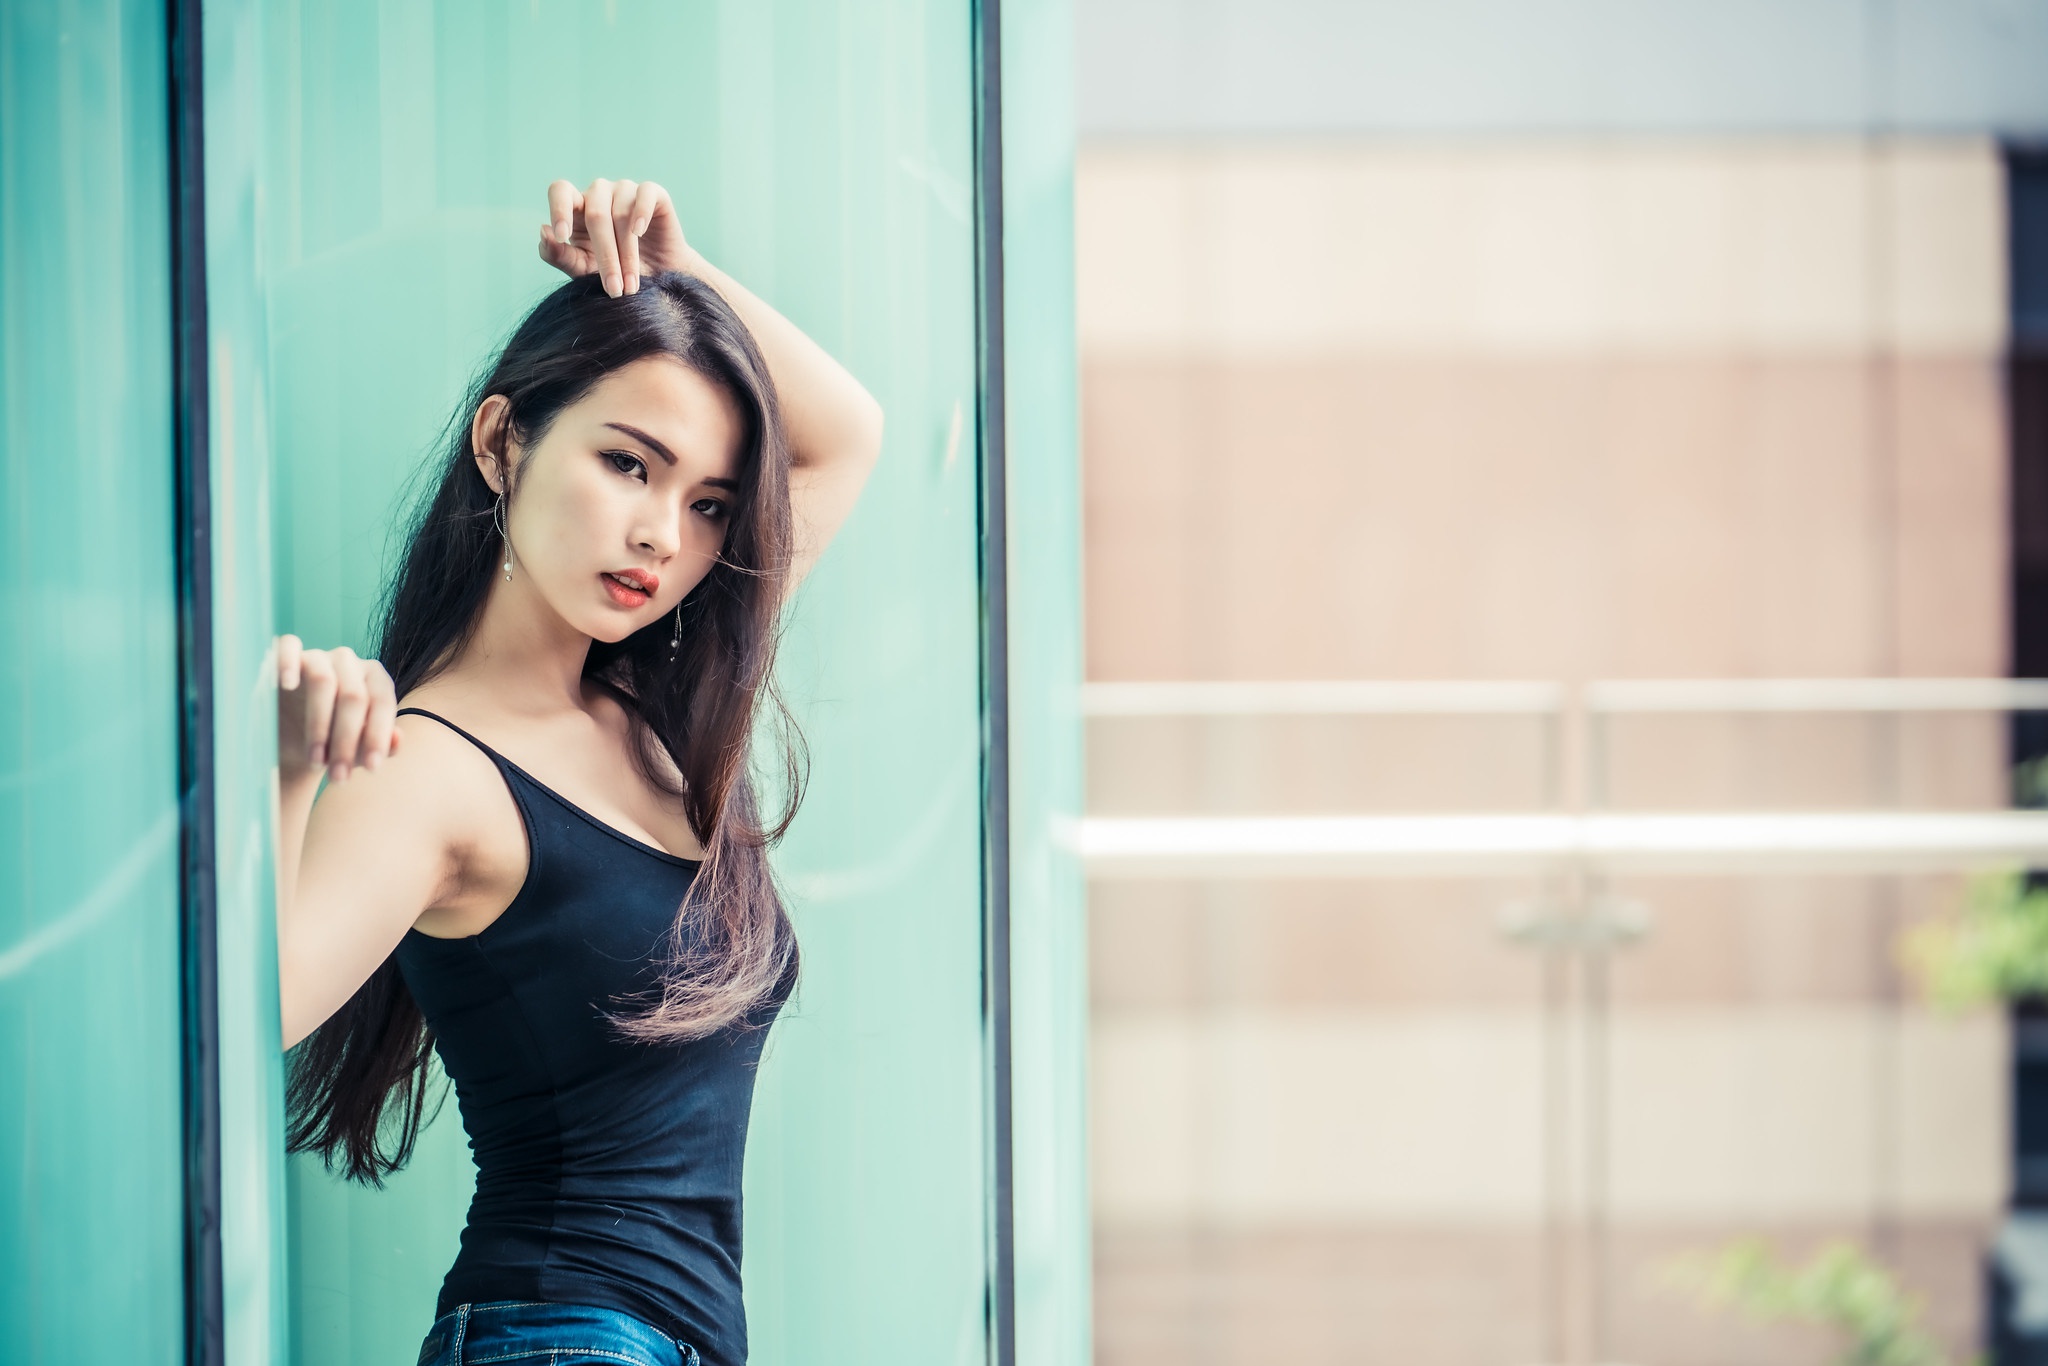 People 2048x1366 Asian model women long hair brunette depth of field leaning jeans black shirt